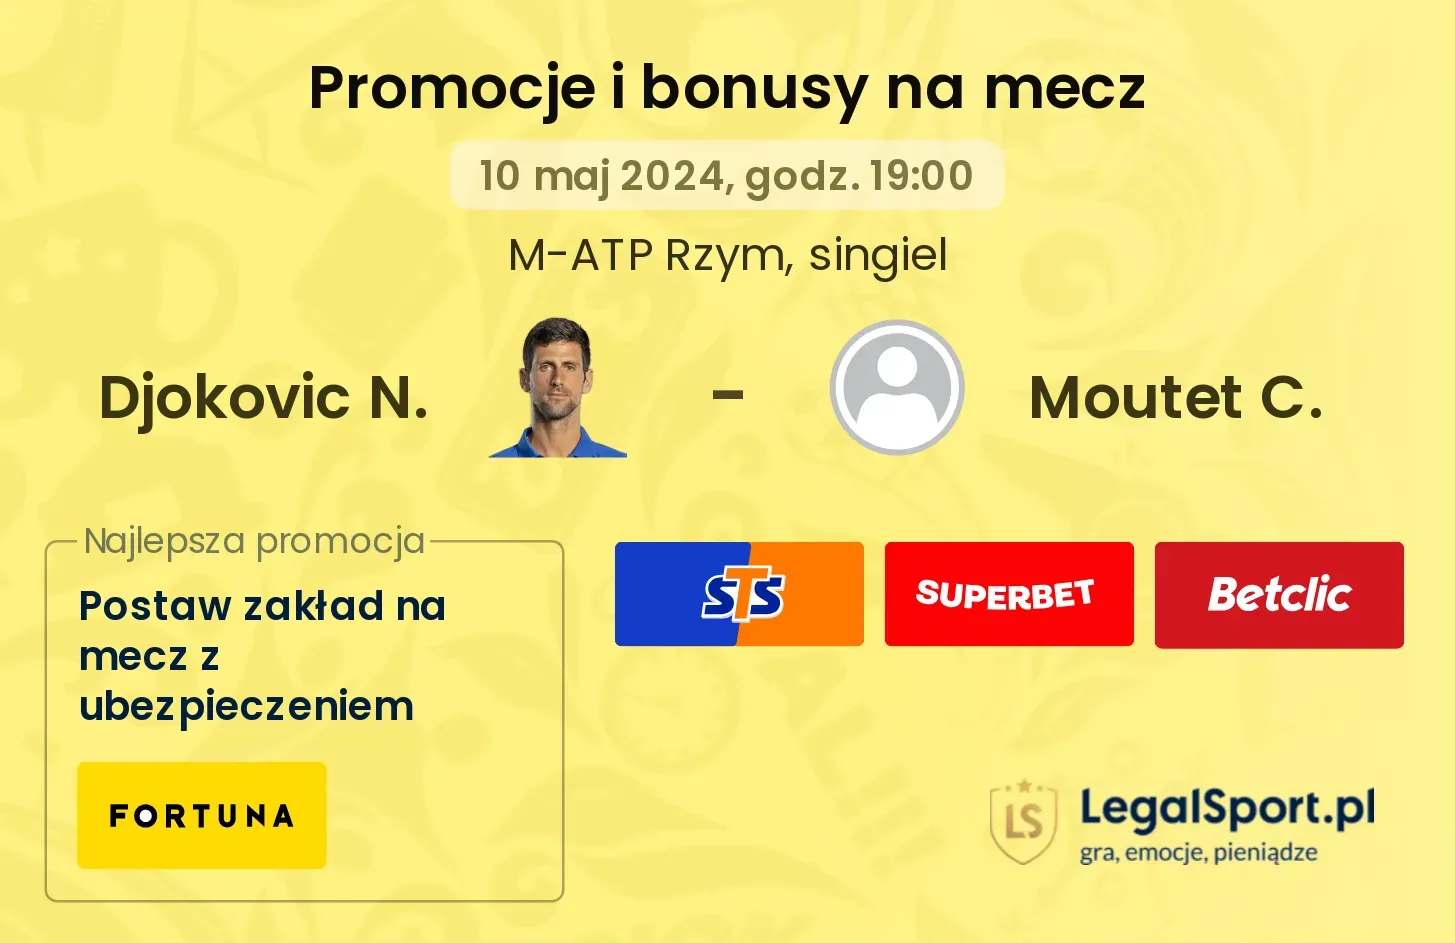 Djokovic N. - Moutet C. promocje bonusy na mecz